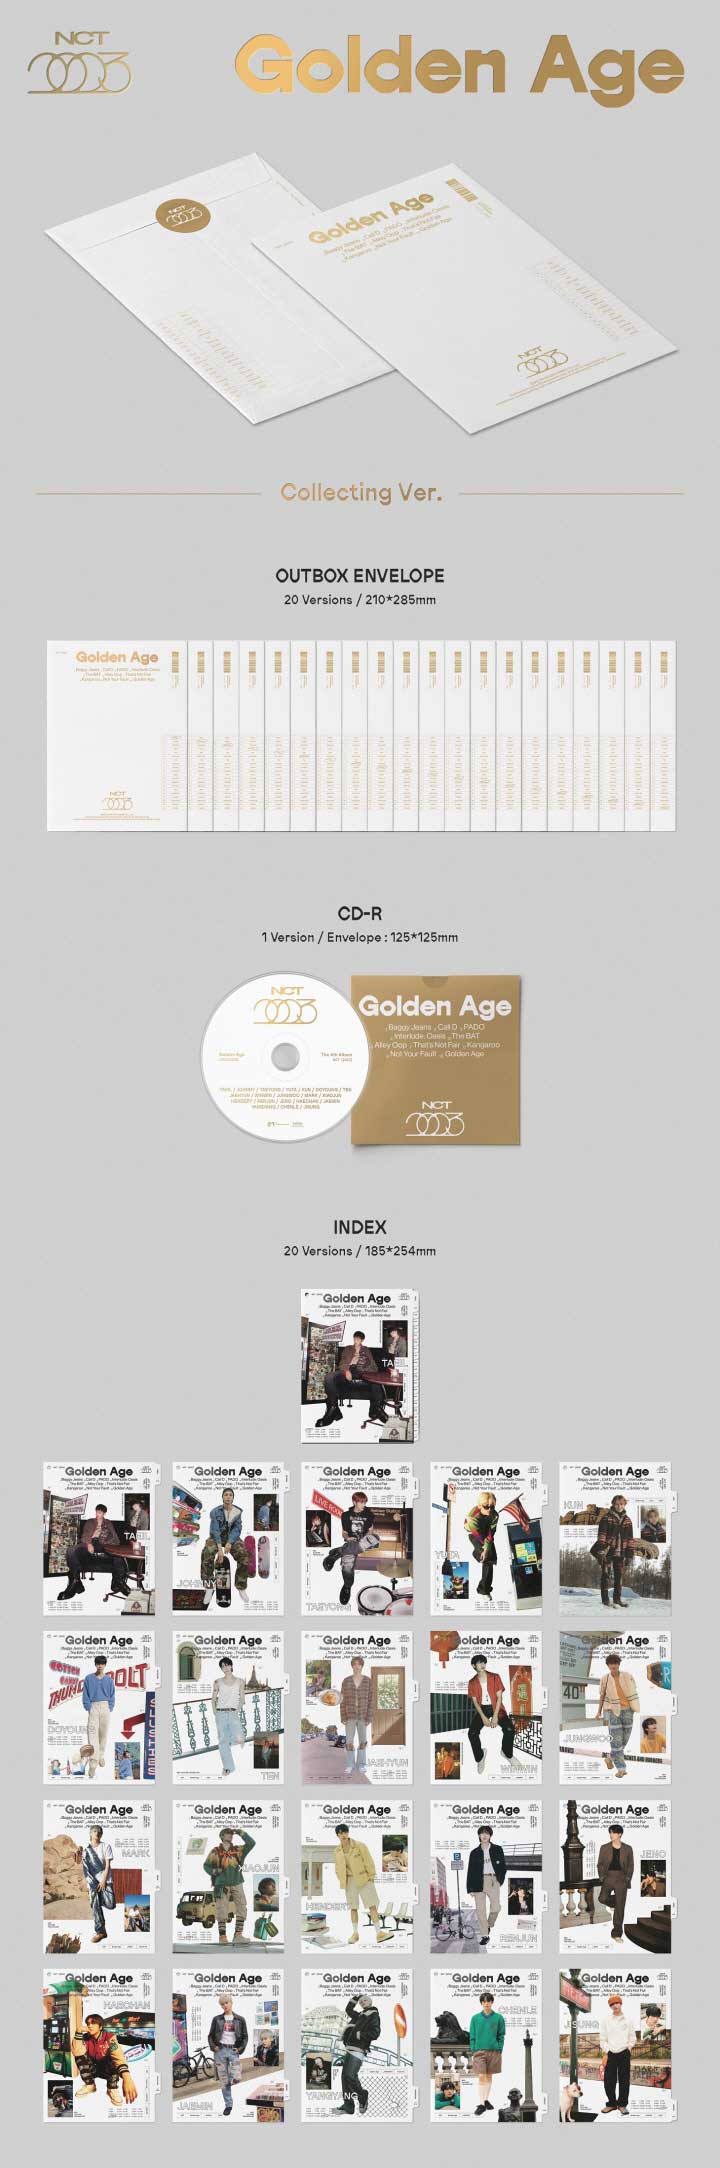 8/29 韓国発売】【予約】NCT エヌシーティー 4TH ALBUM【Golden Age